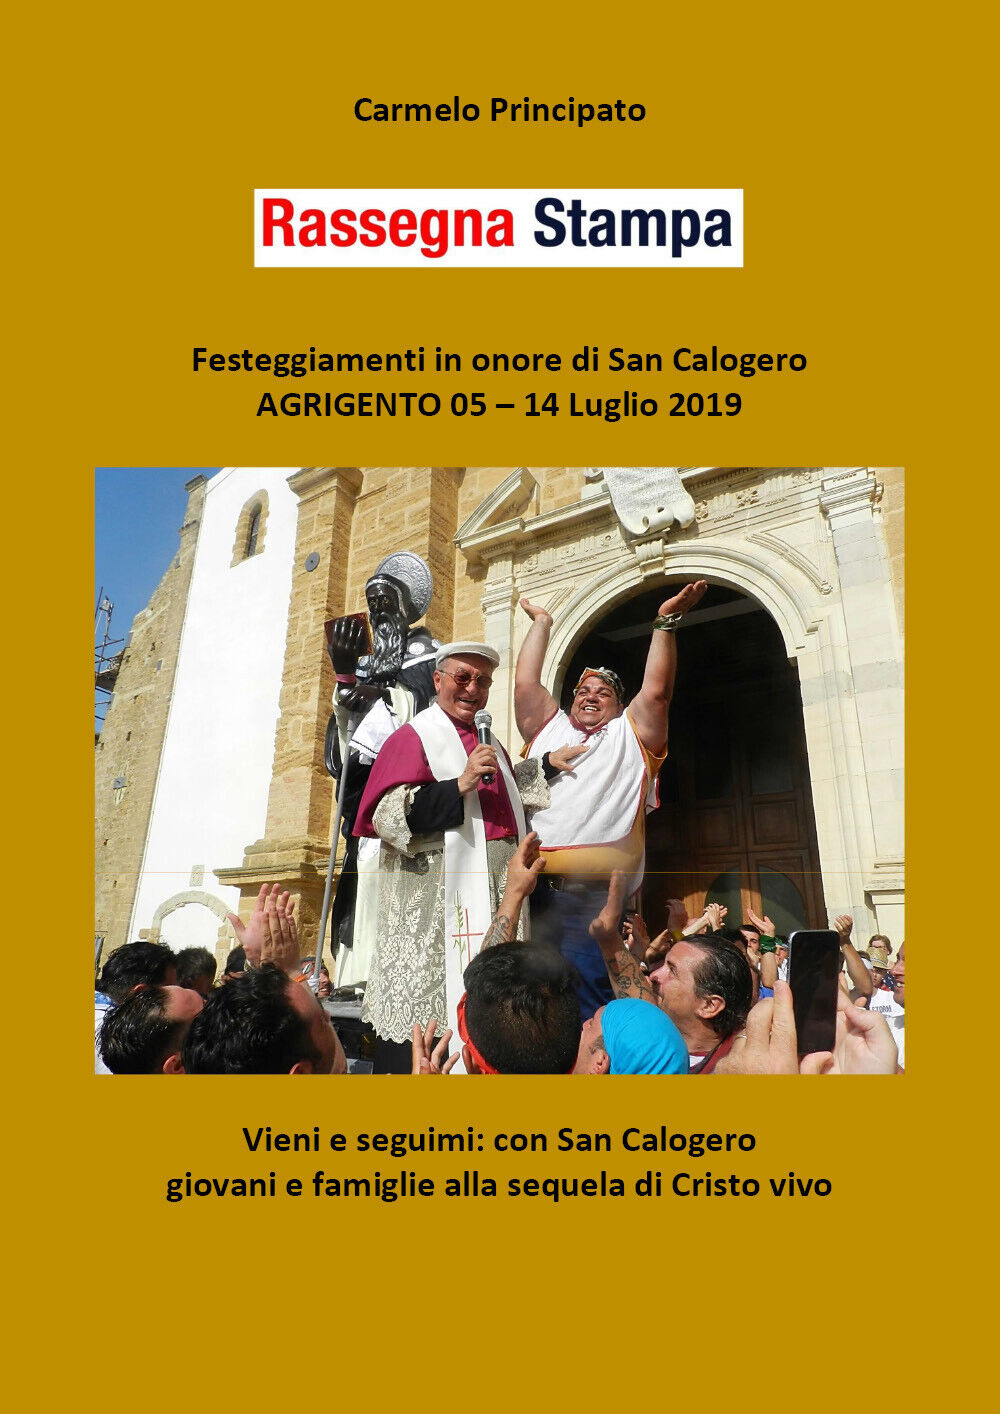 Rassegna Stampa - Festeggiamenti in onore di San Calogero - Agrigento 05 - 14